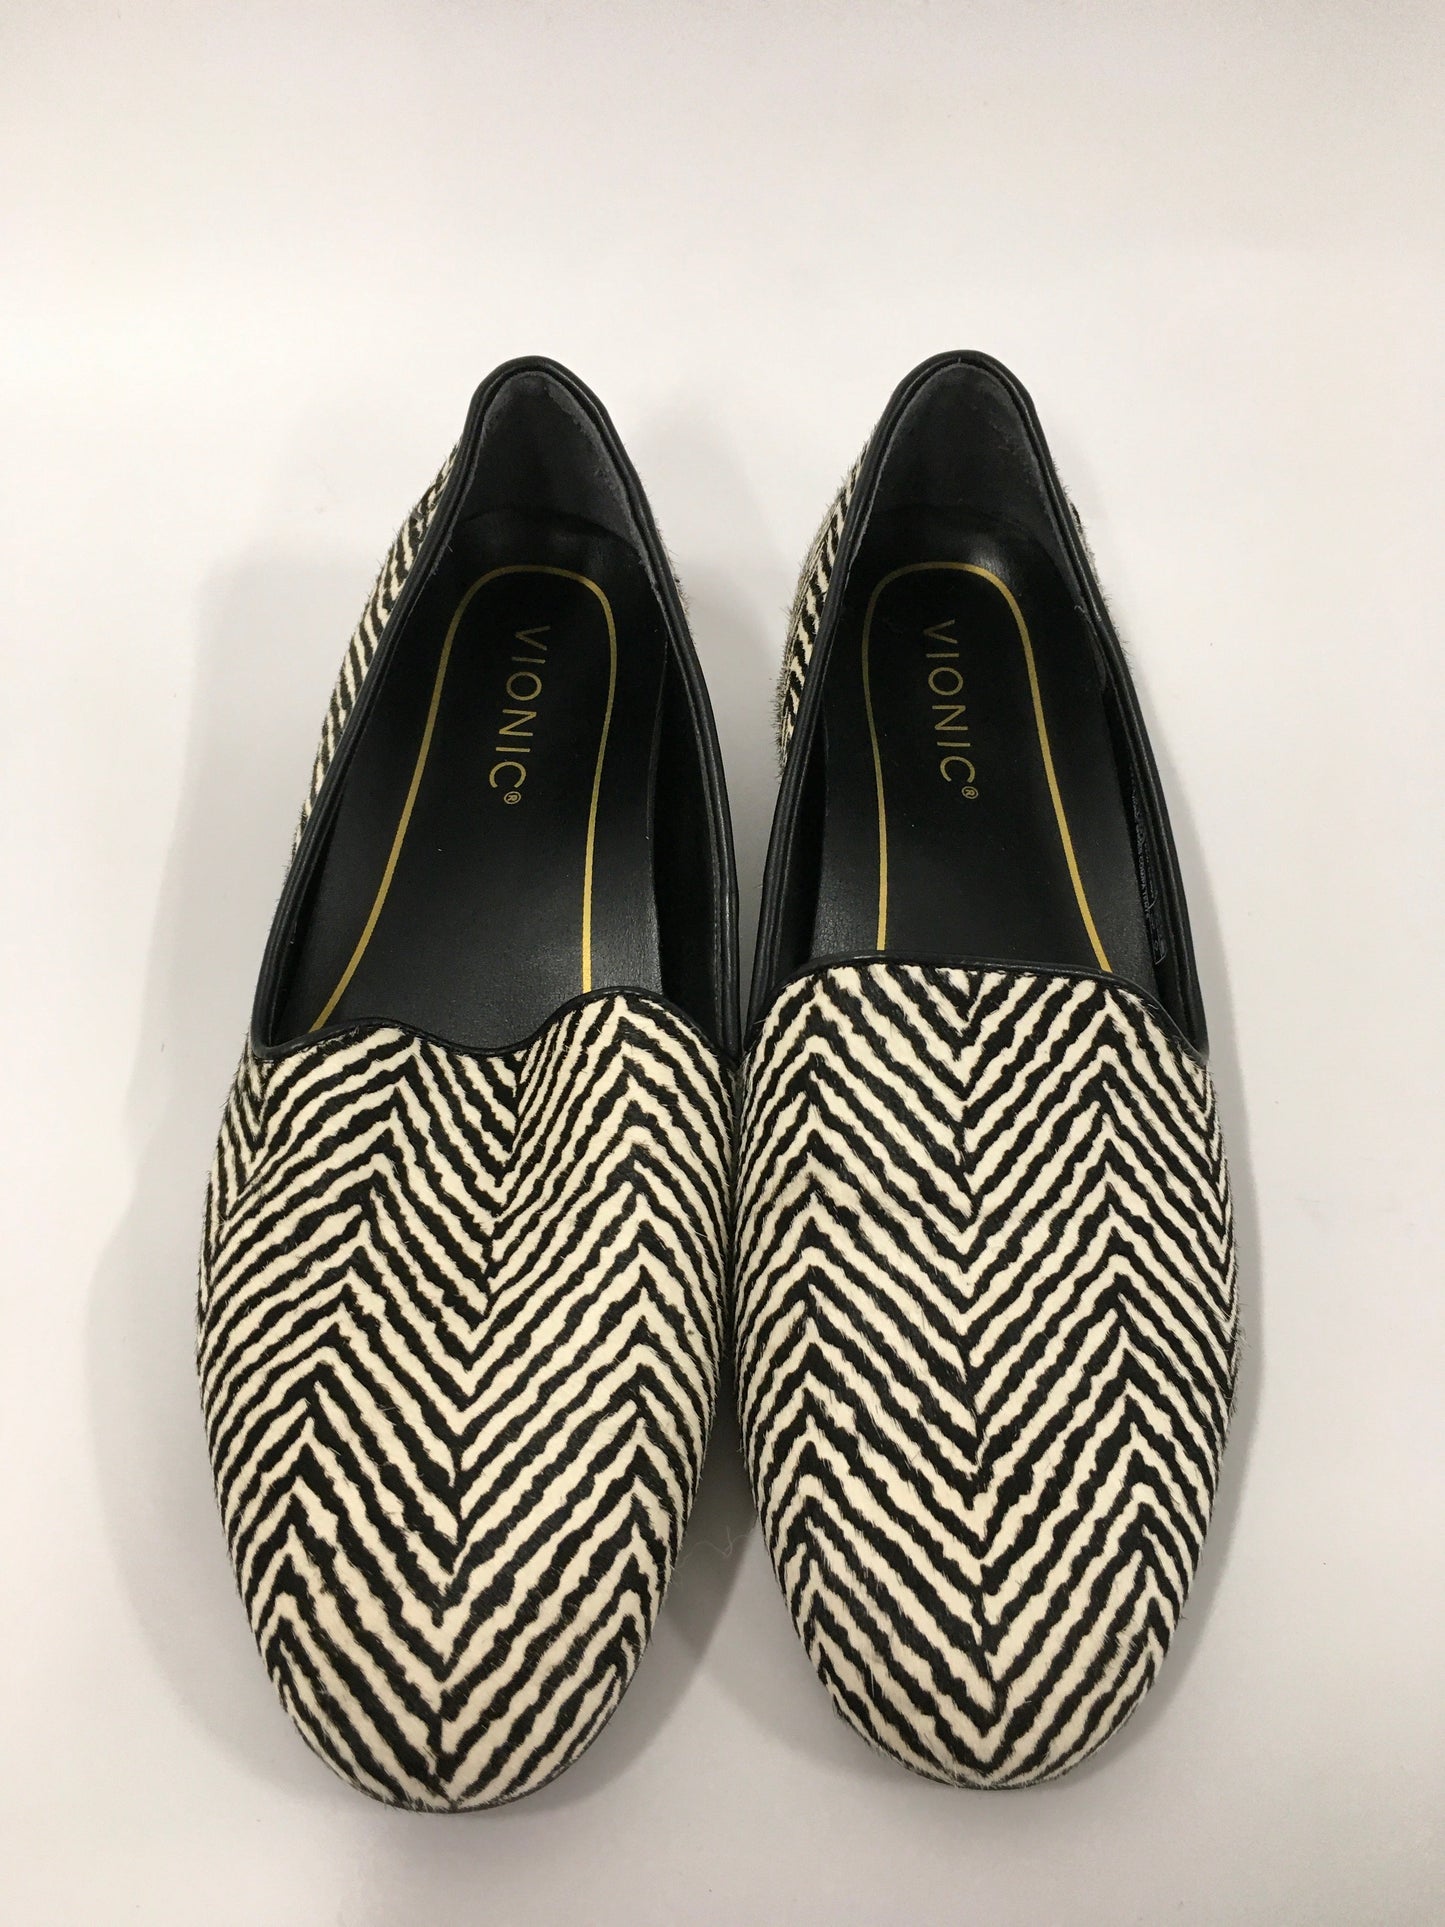 Zebra Print Shoes Flats Vionic, Size 7